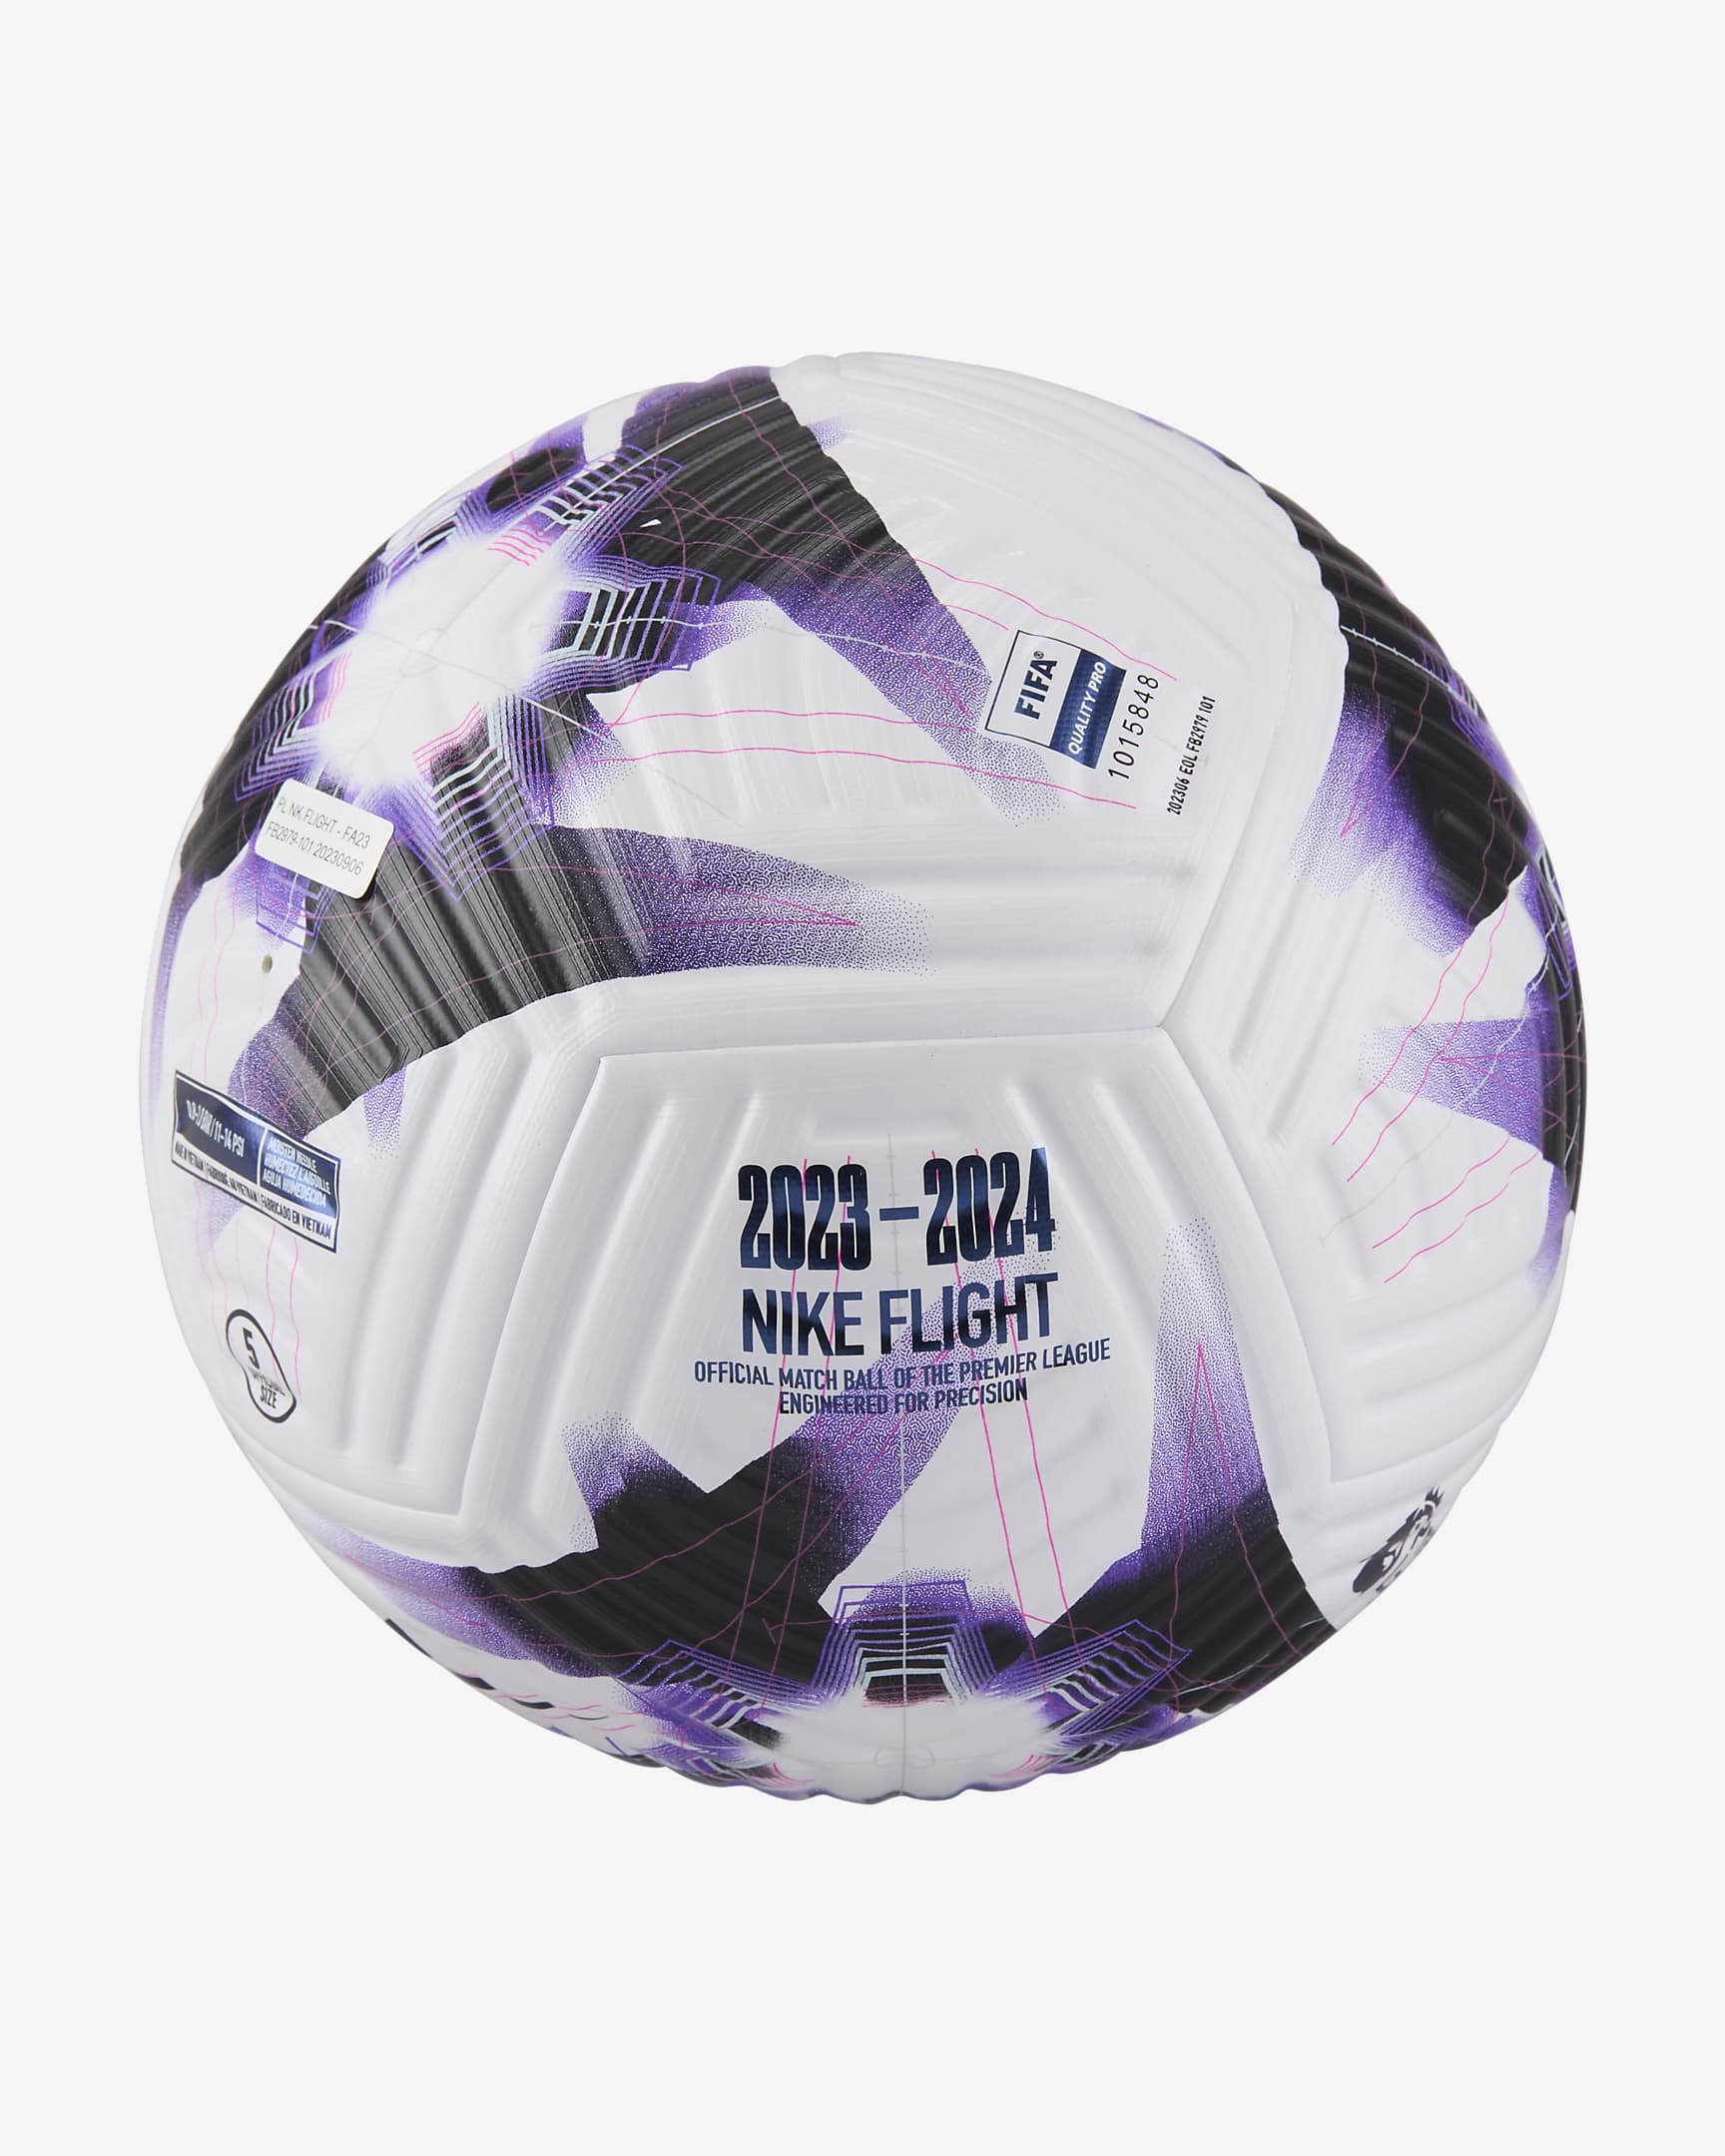 Premier League Flight Football - White/Fierce Purple/White